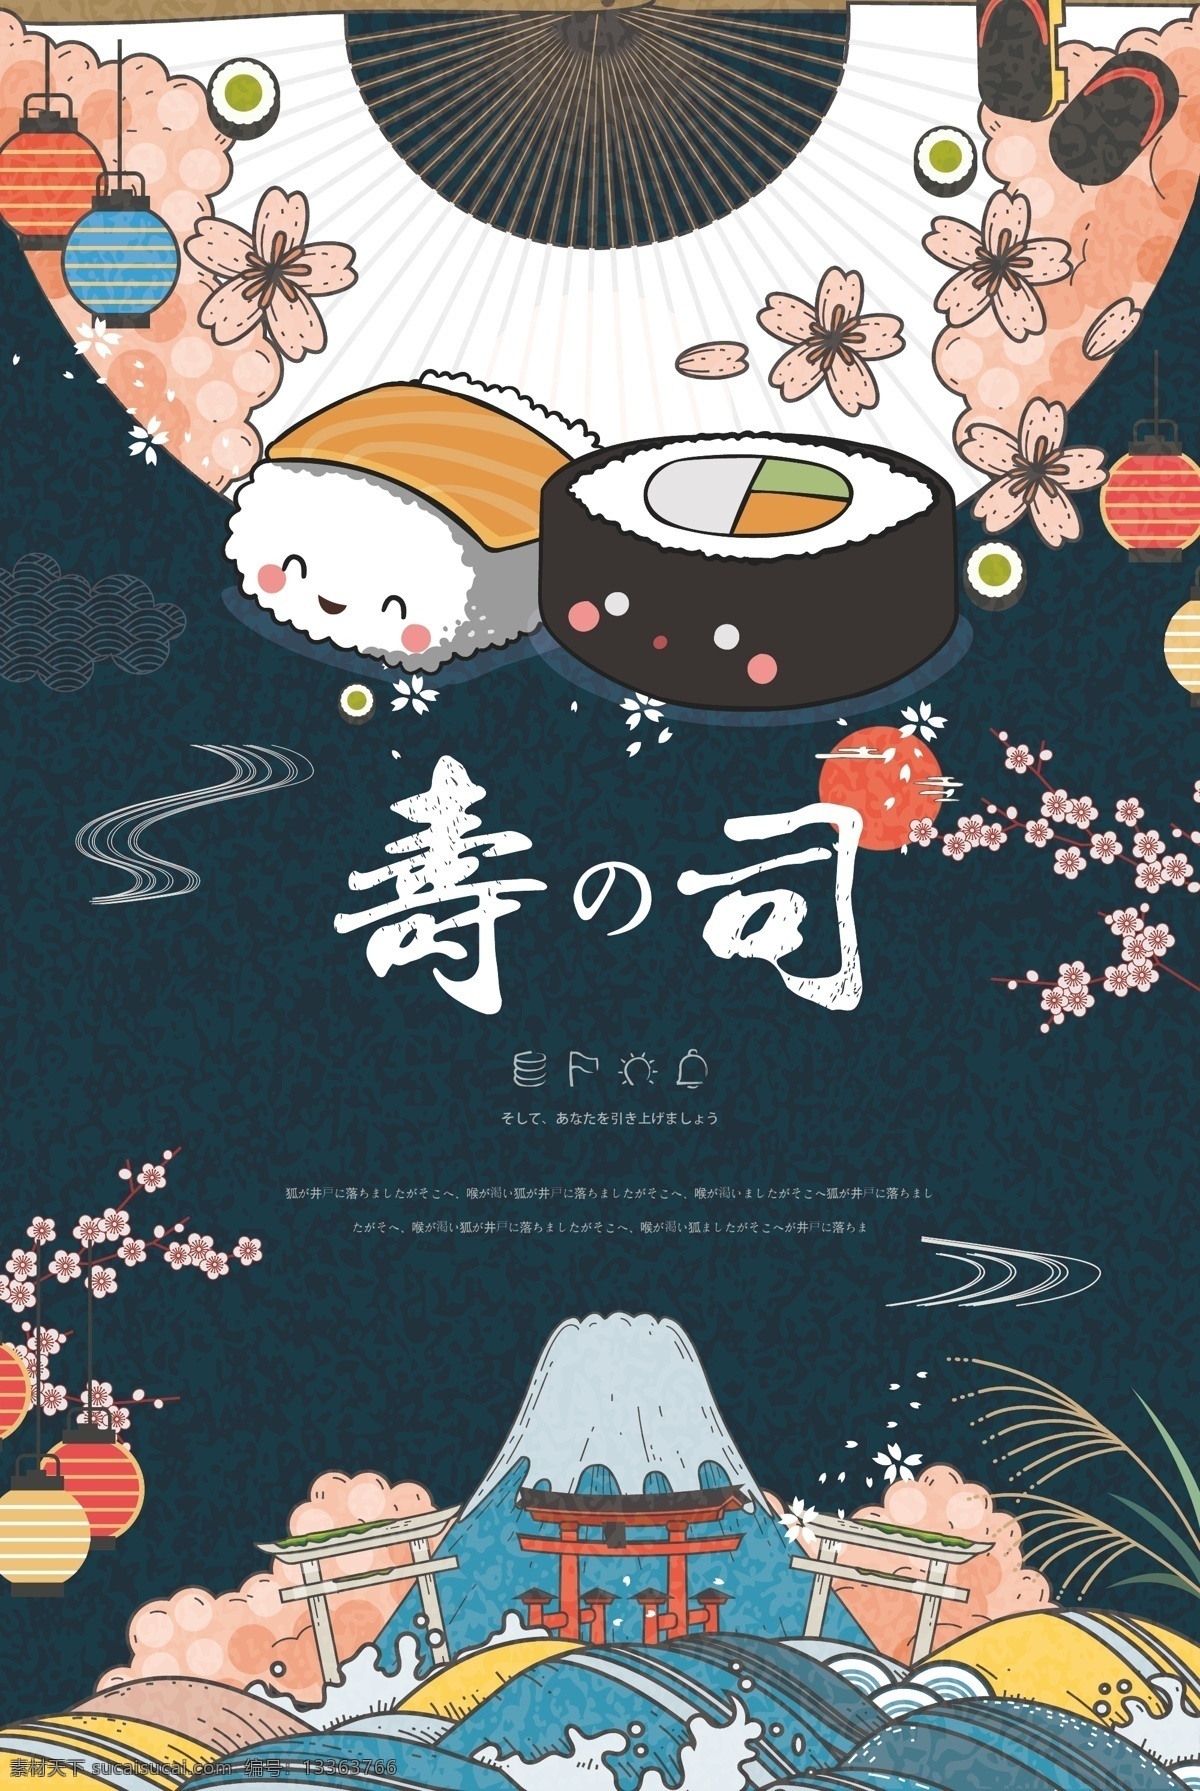 卡通 寿司 插画 海报 可爱 矢量图 矢量插画 插画海报 日式风格 日式 文化艺术 传统文化